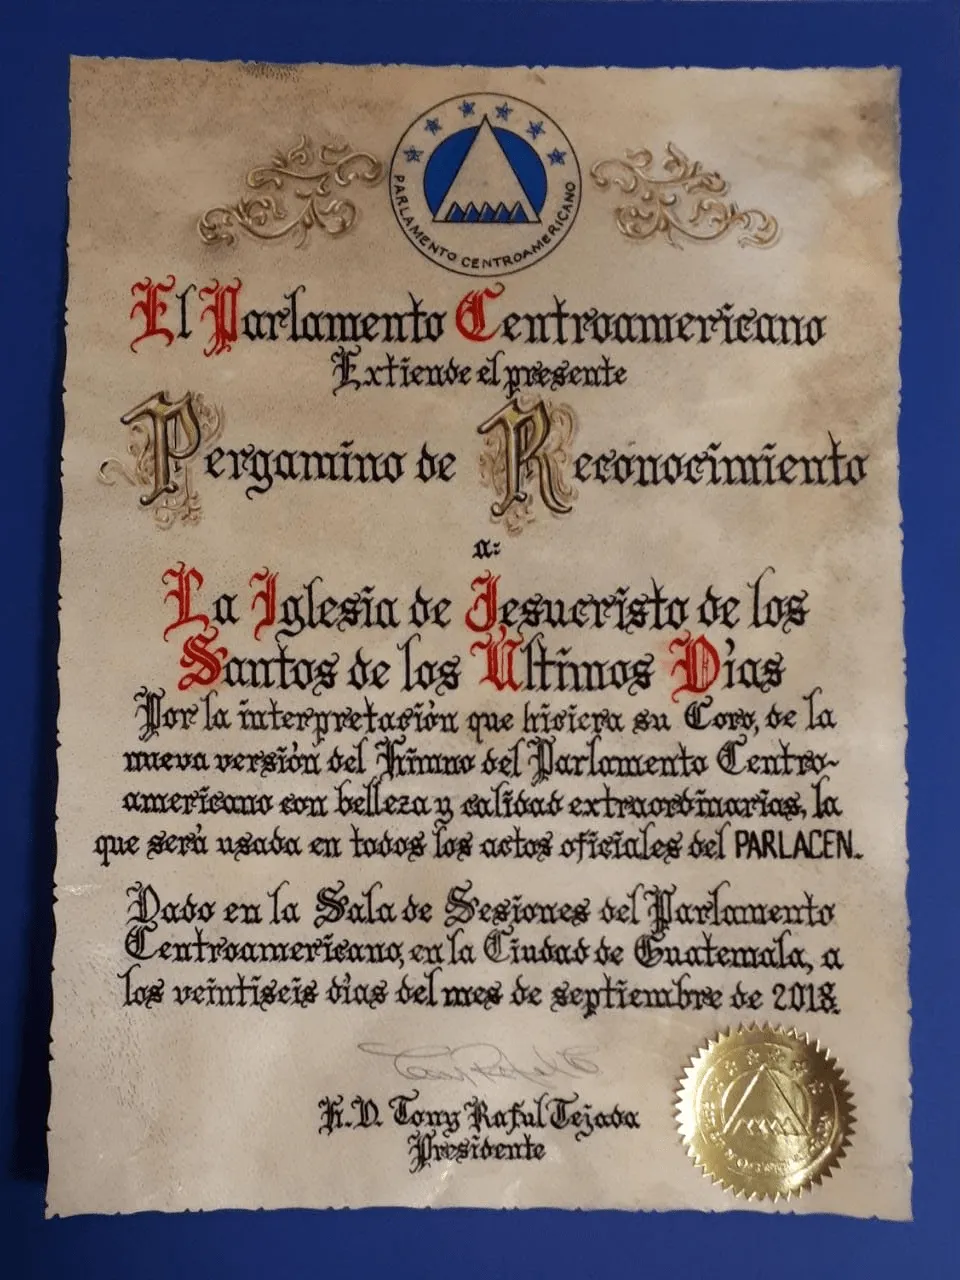 El Parlamento Centroamericano otorgó reconocimiento a La Iglesia.